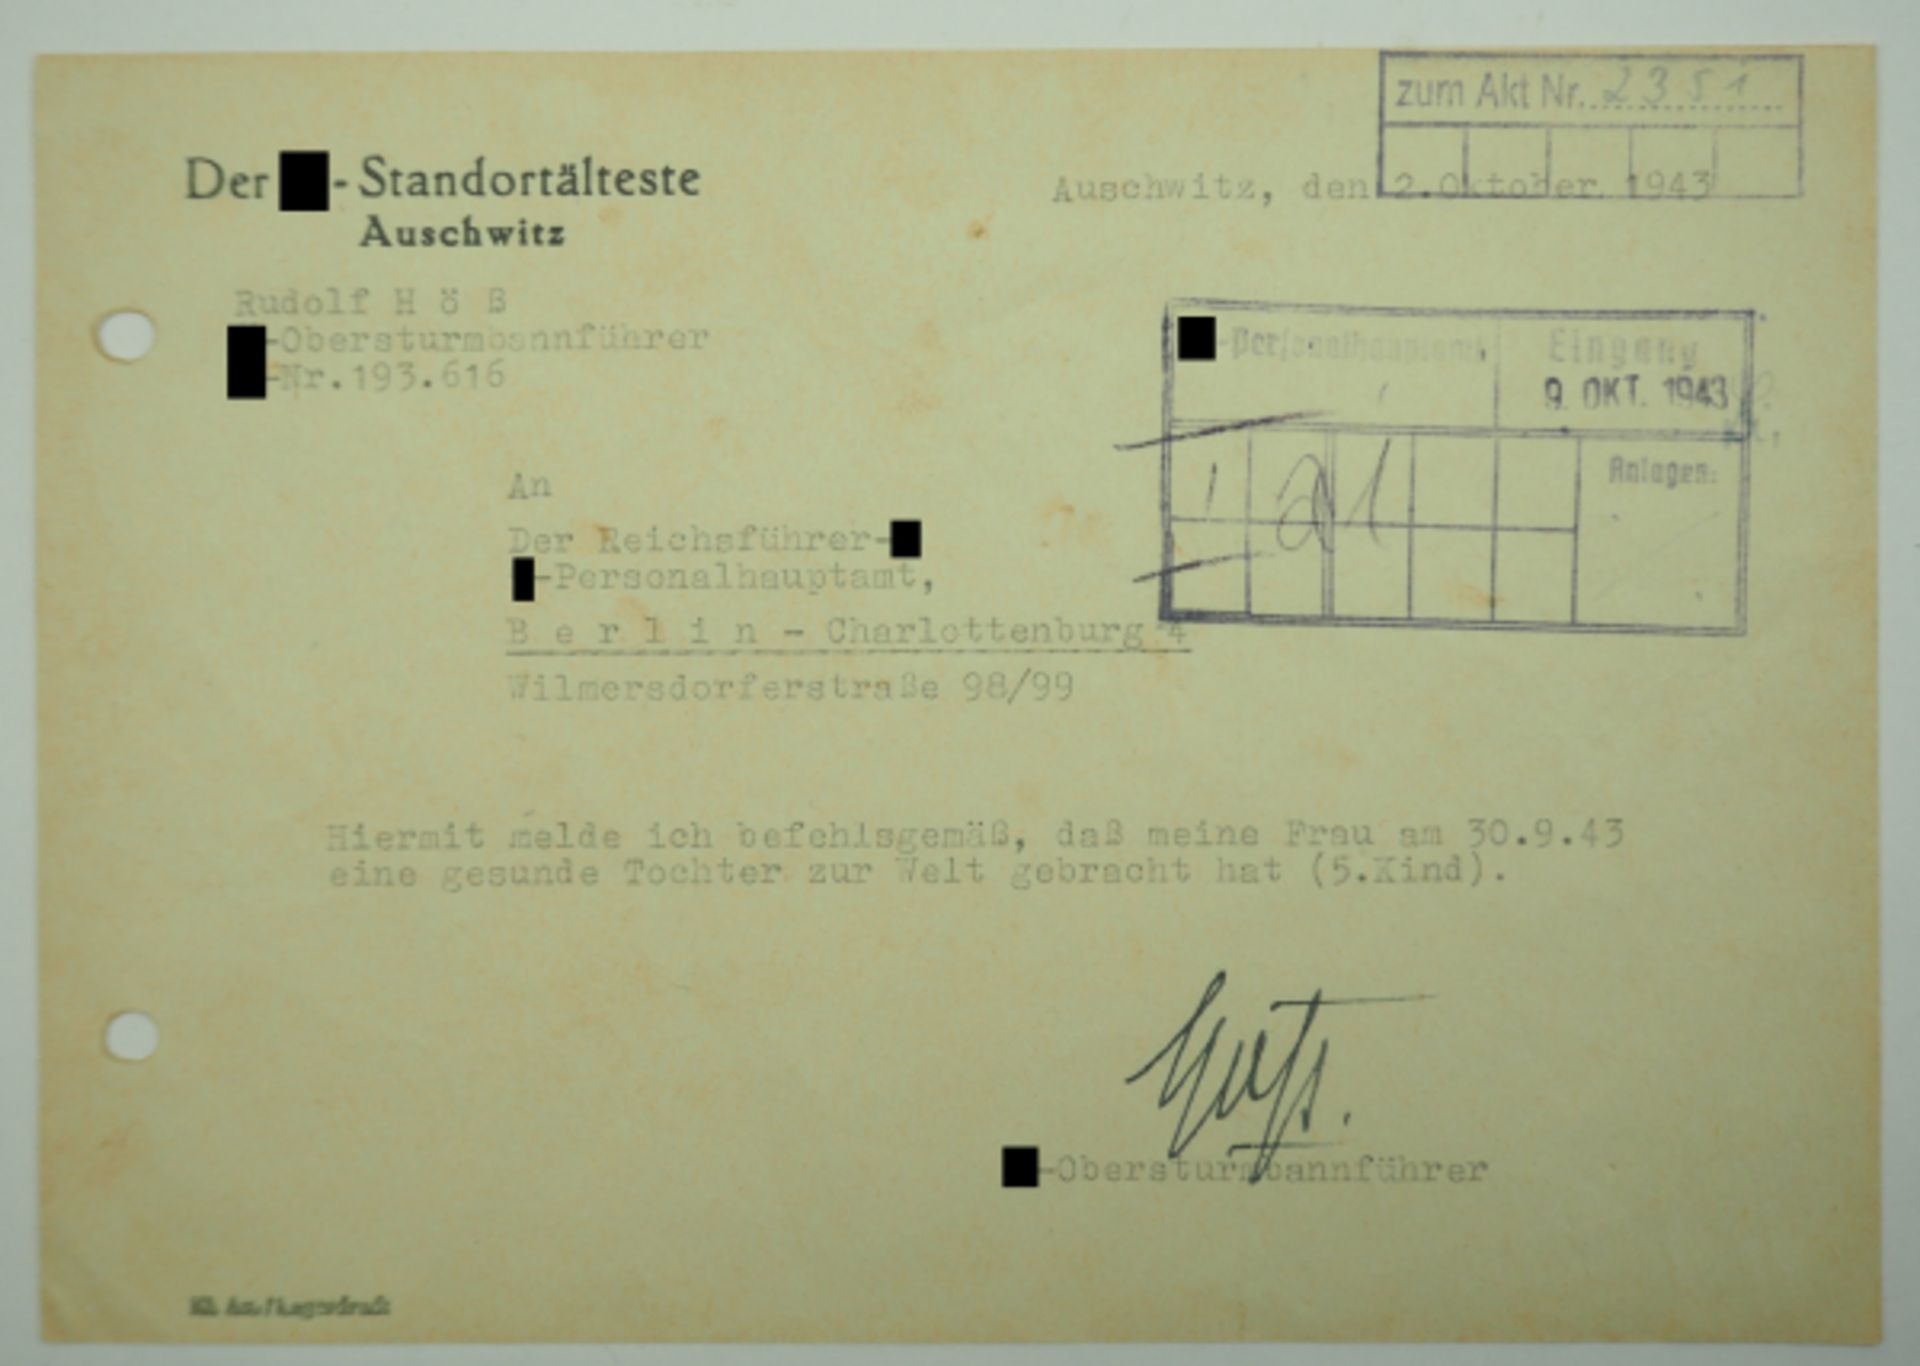 Höß, Rudolf.. SS-Standortältester Auschwitz und erster Lagerkommandant. Vordruck, Schreiben über die